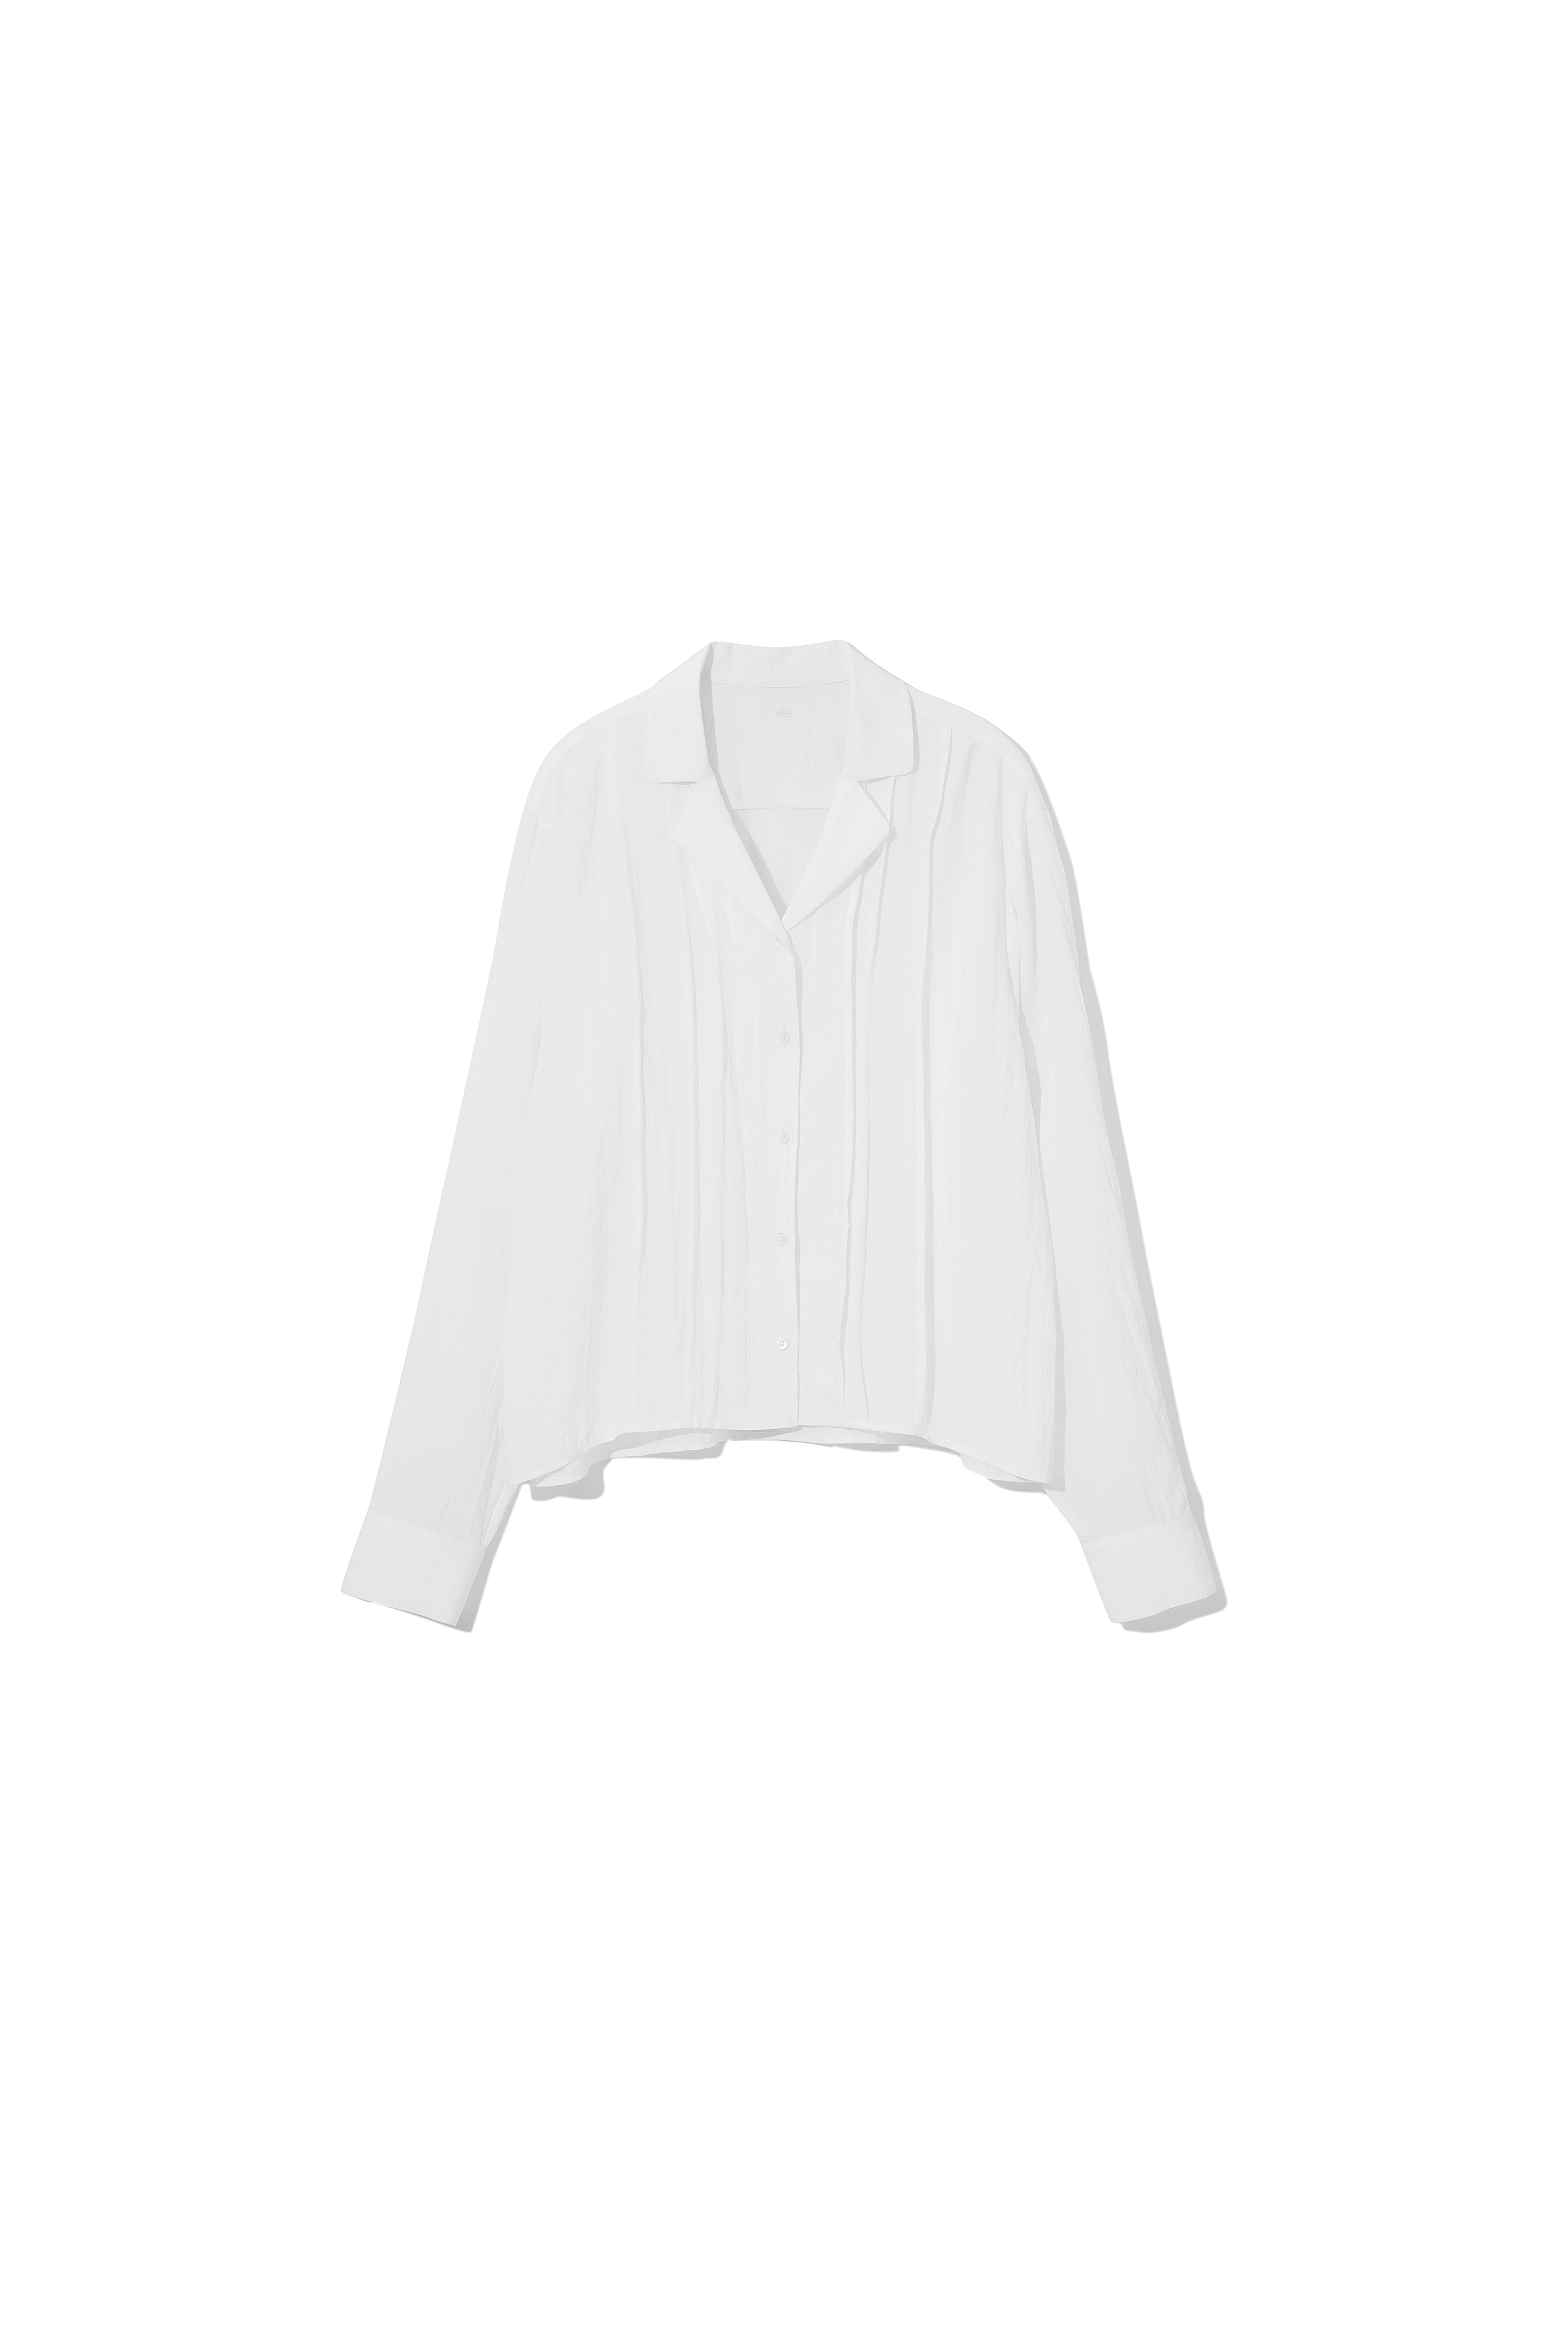 3rd) Birkin Shirts White